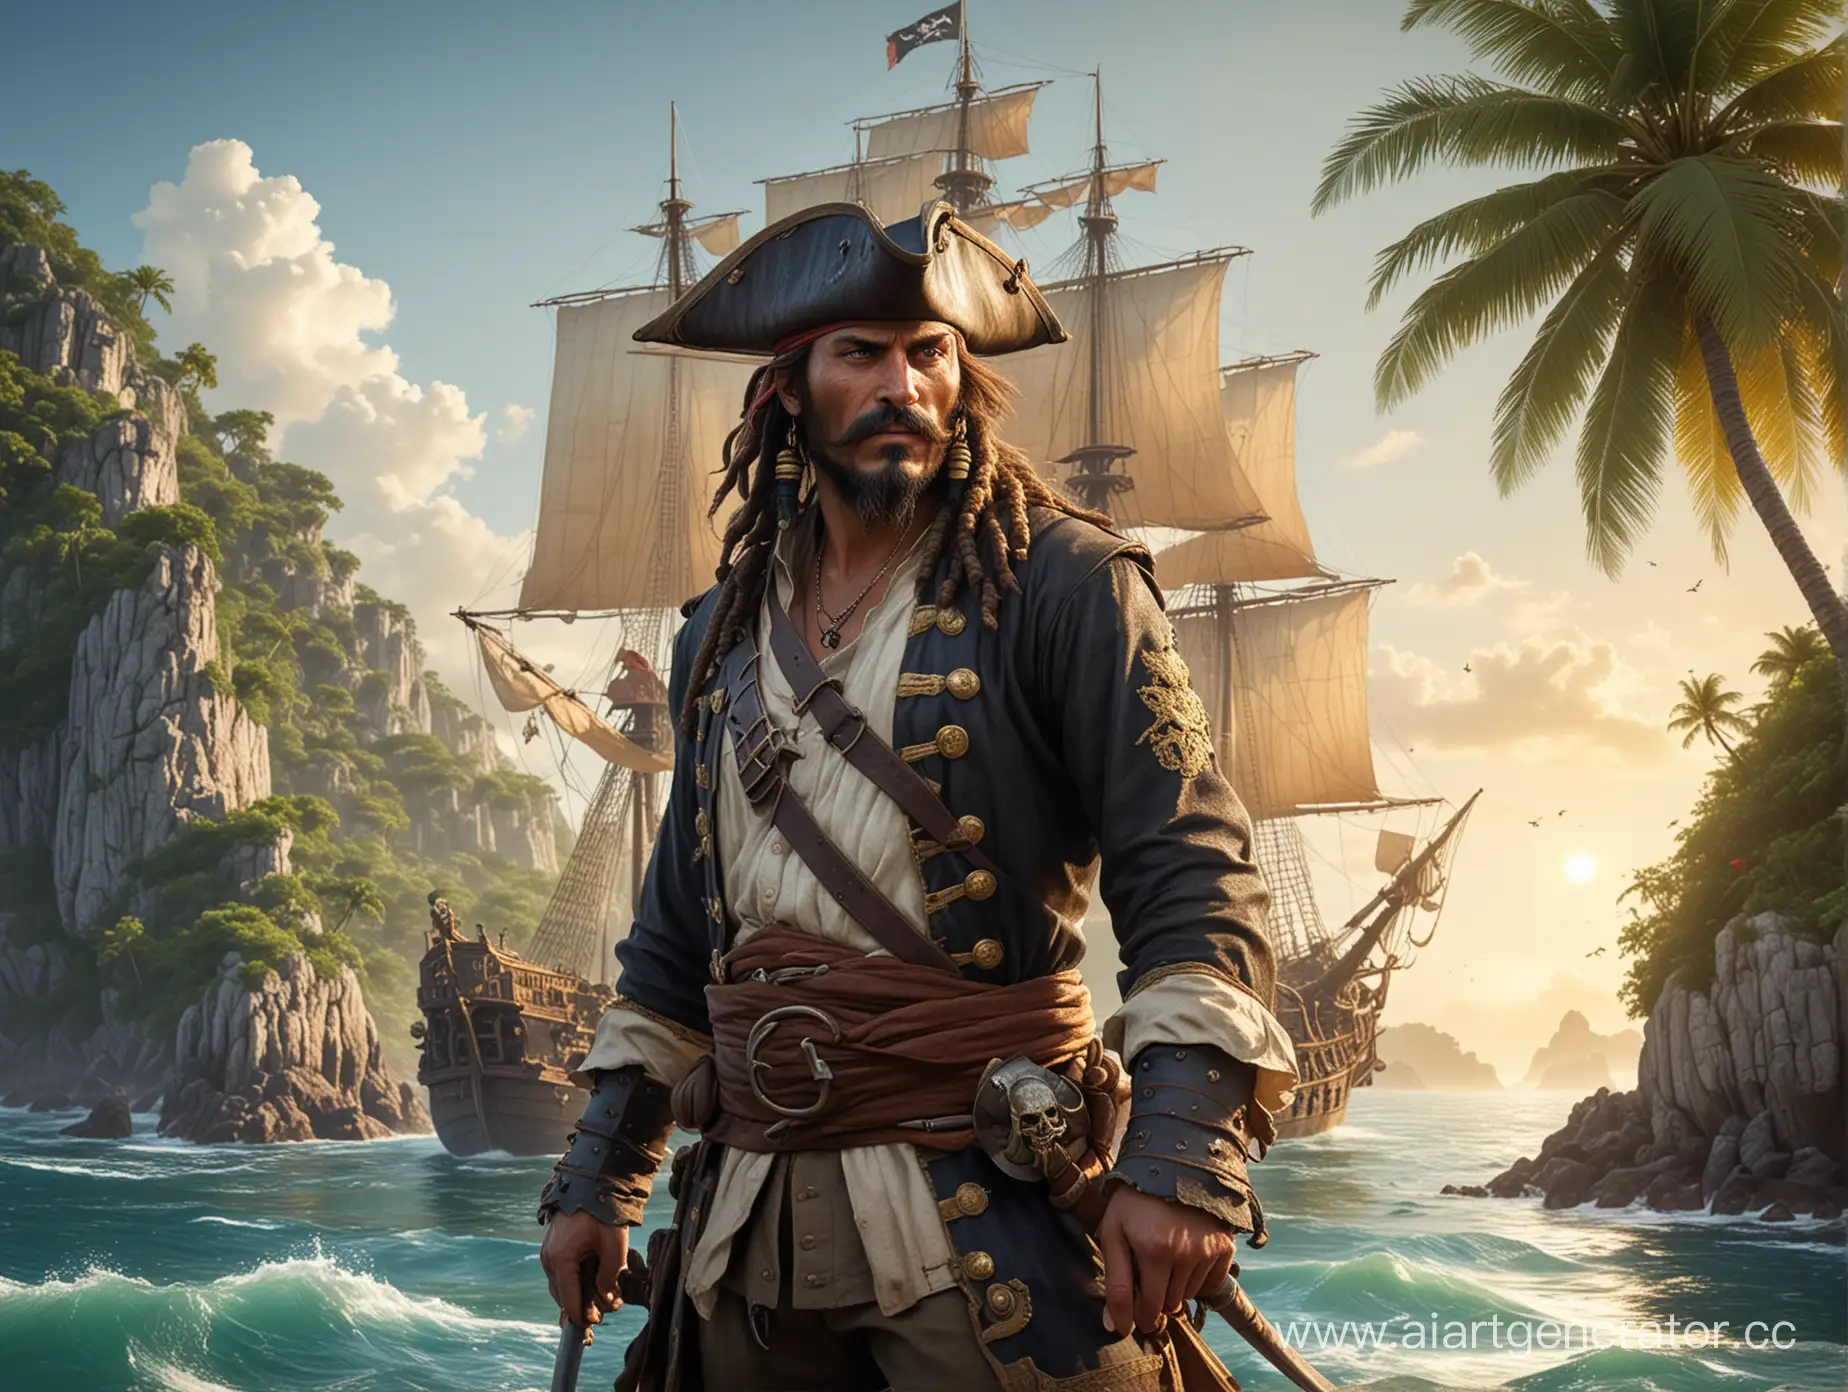 Пират Яруга - отважный капитан галеона ПиСюн в камзоле на фоне тропических островов.